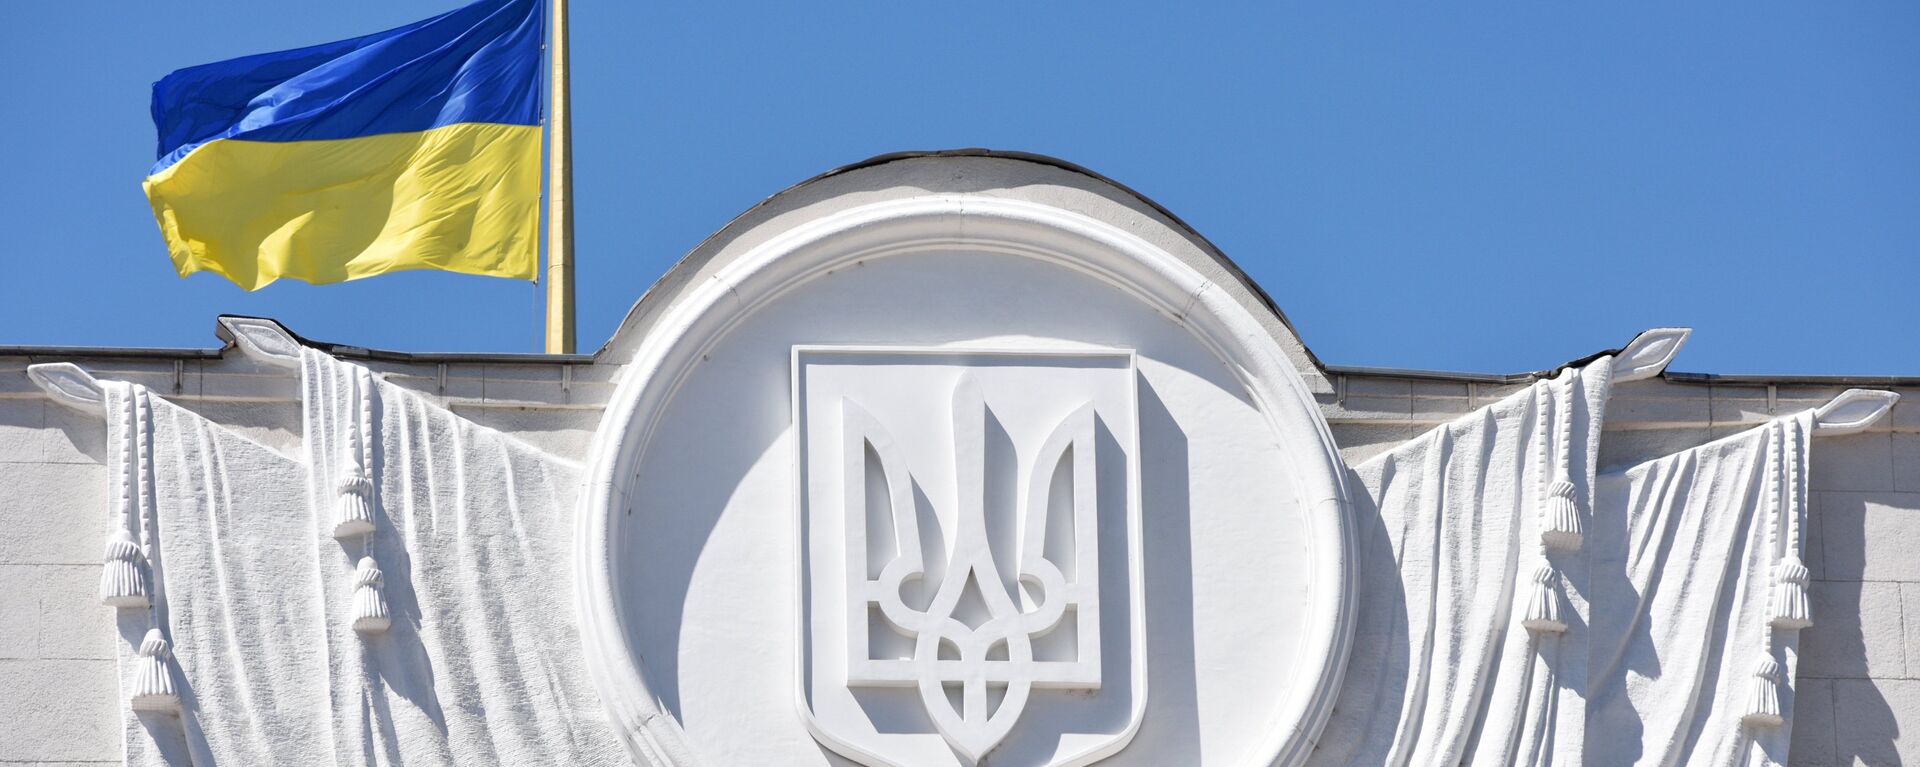 Флаг Украины на здании Верховной рады в Киеве - Sputnik Беларусь, 1920, 10.04.2021